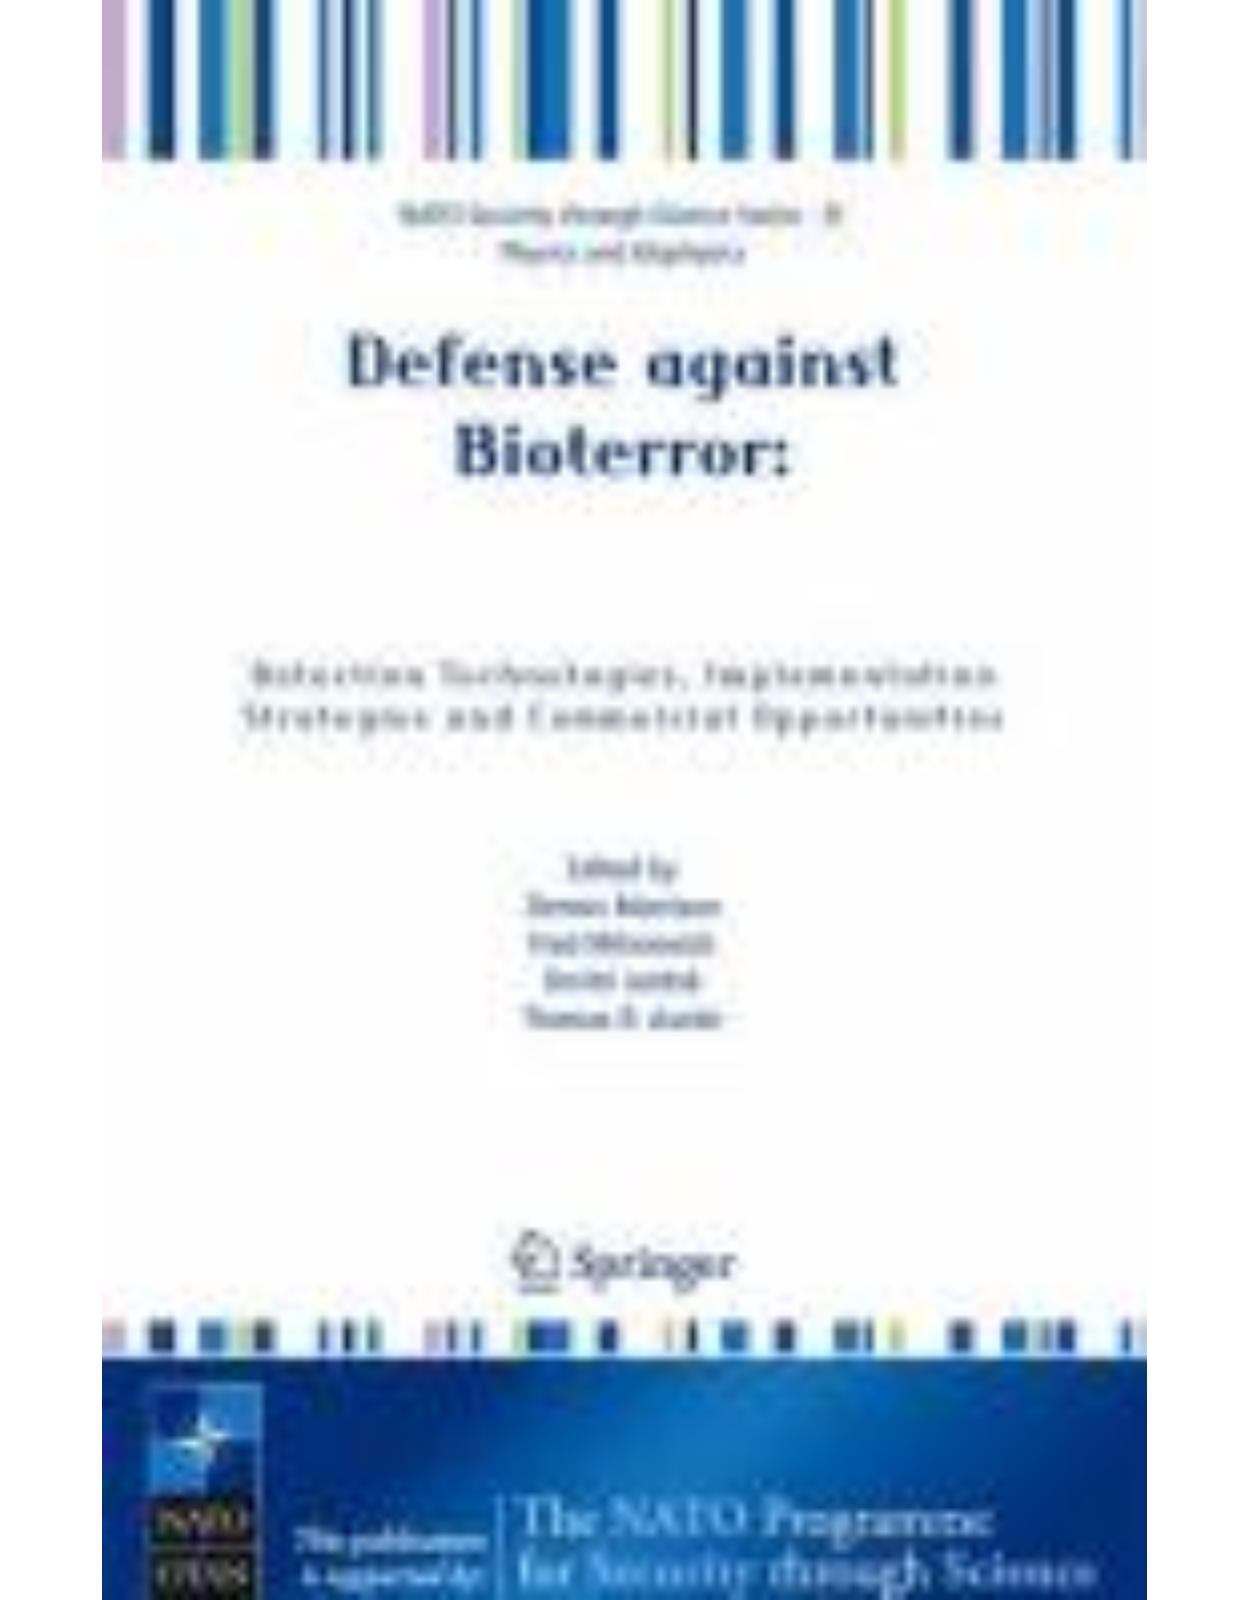 Defense against Bioterror